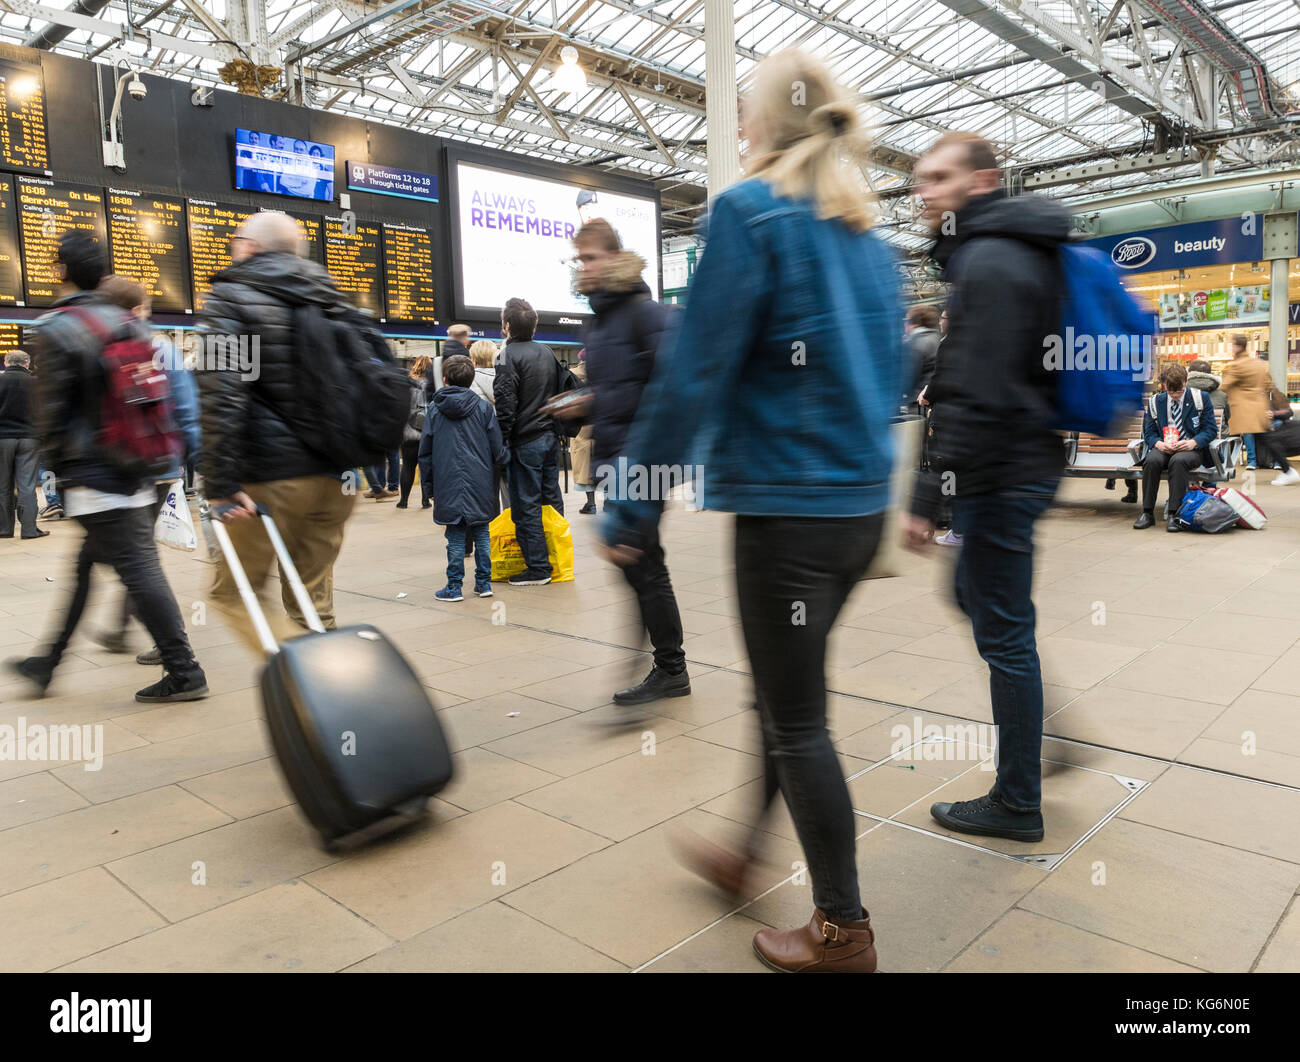 Pendler rush für ihre Bahn während der Rush Hour auf der Bahnhof Edinburgh Waverley. Stockfoto